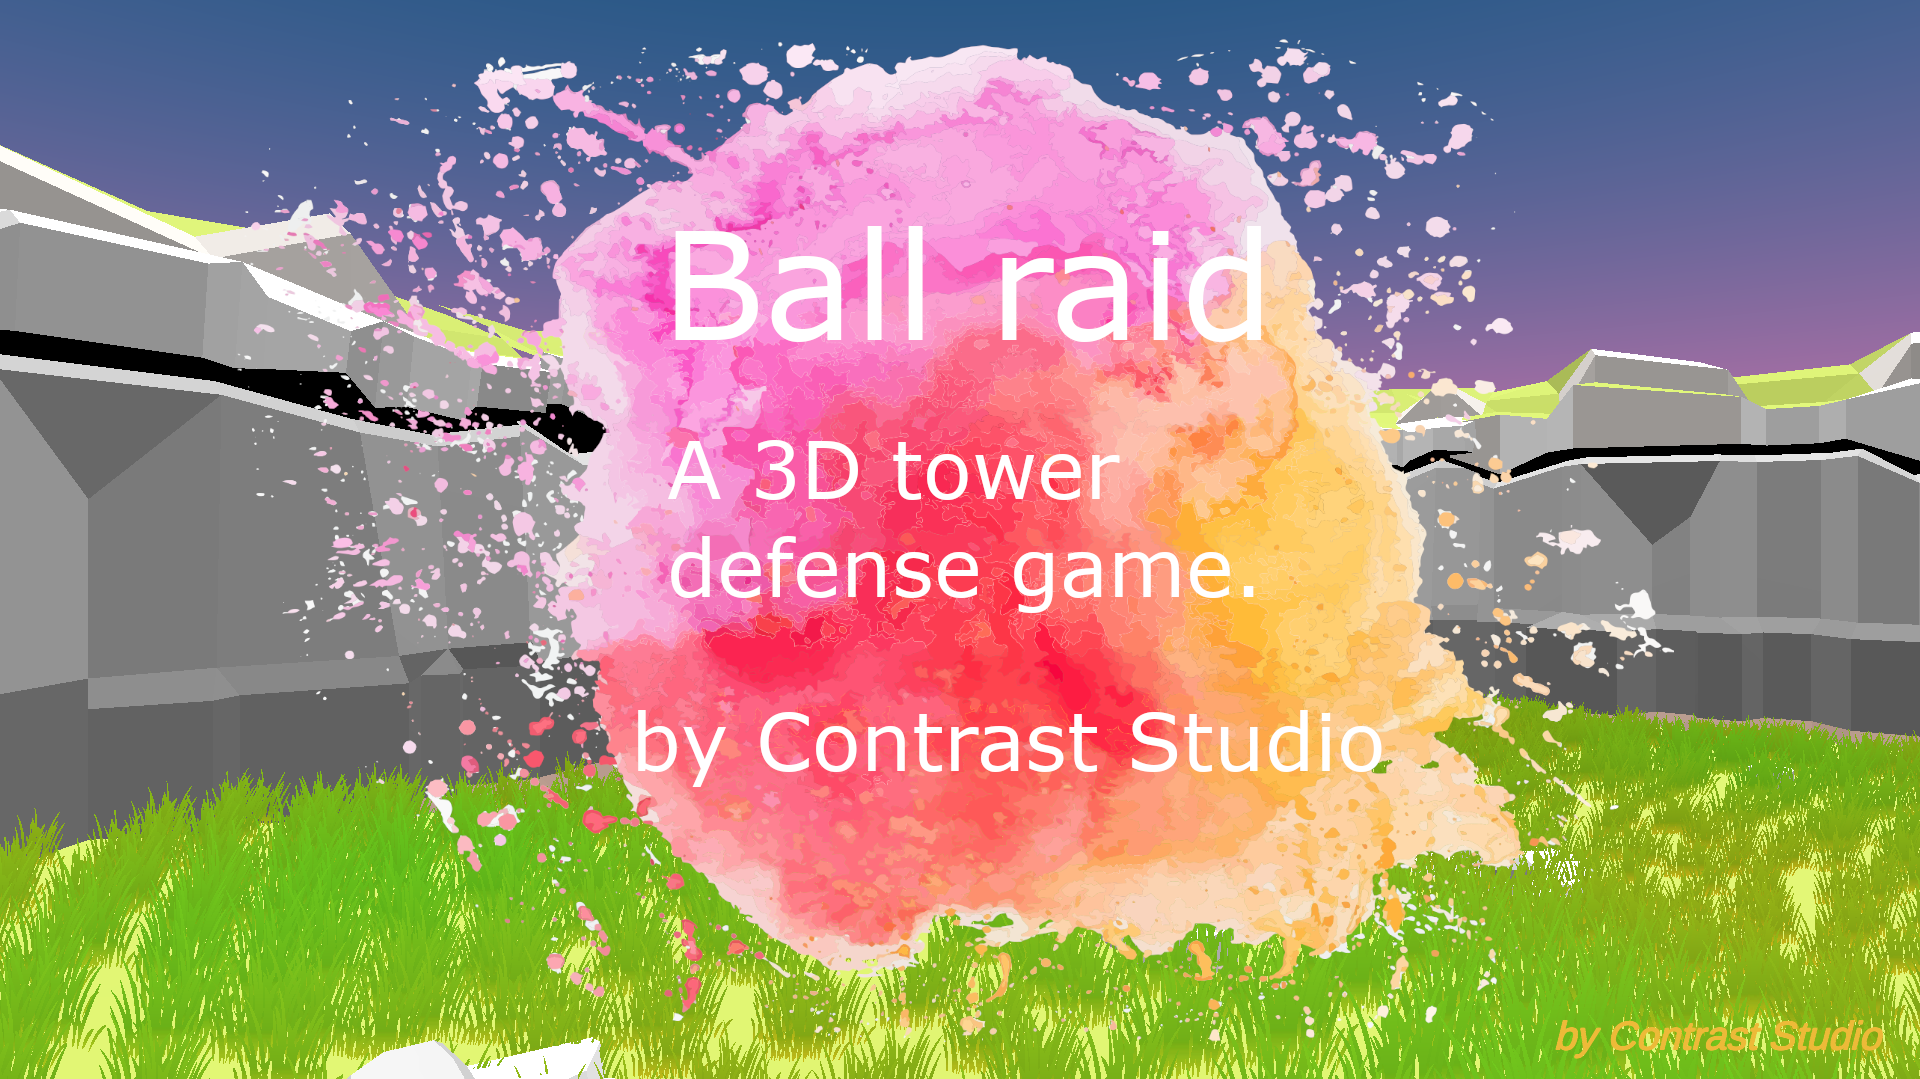 Ball raid